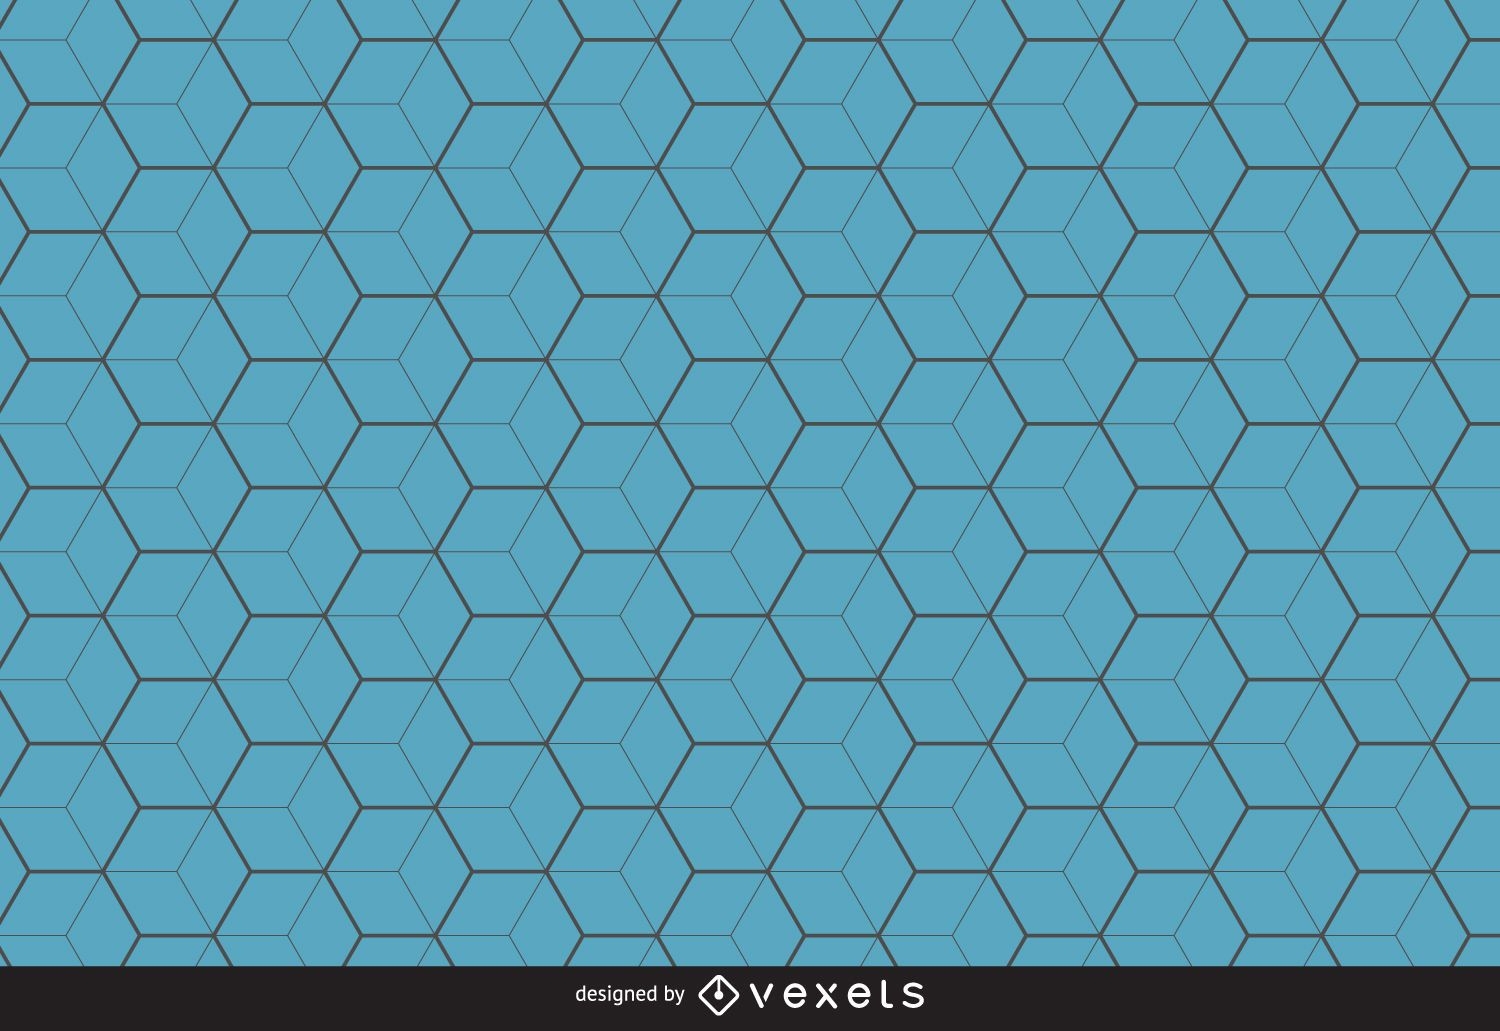 Fondo de patrón hexagonal azul